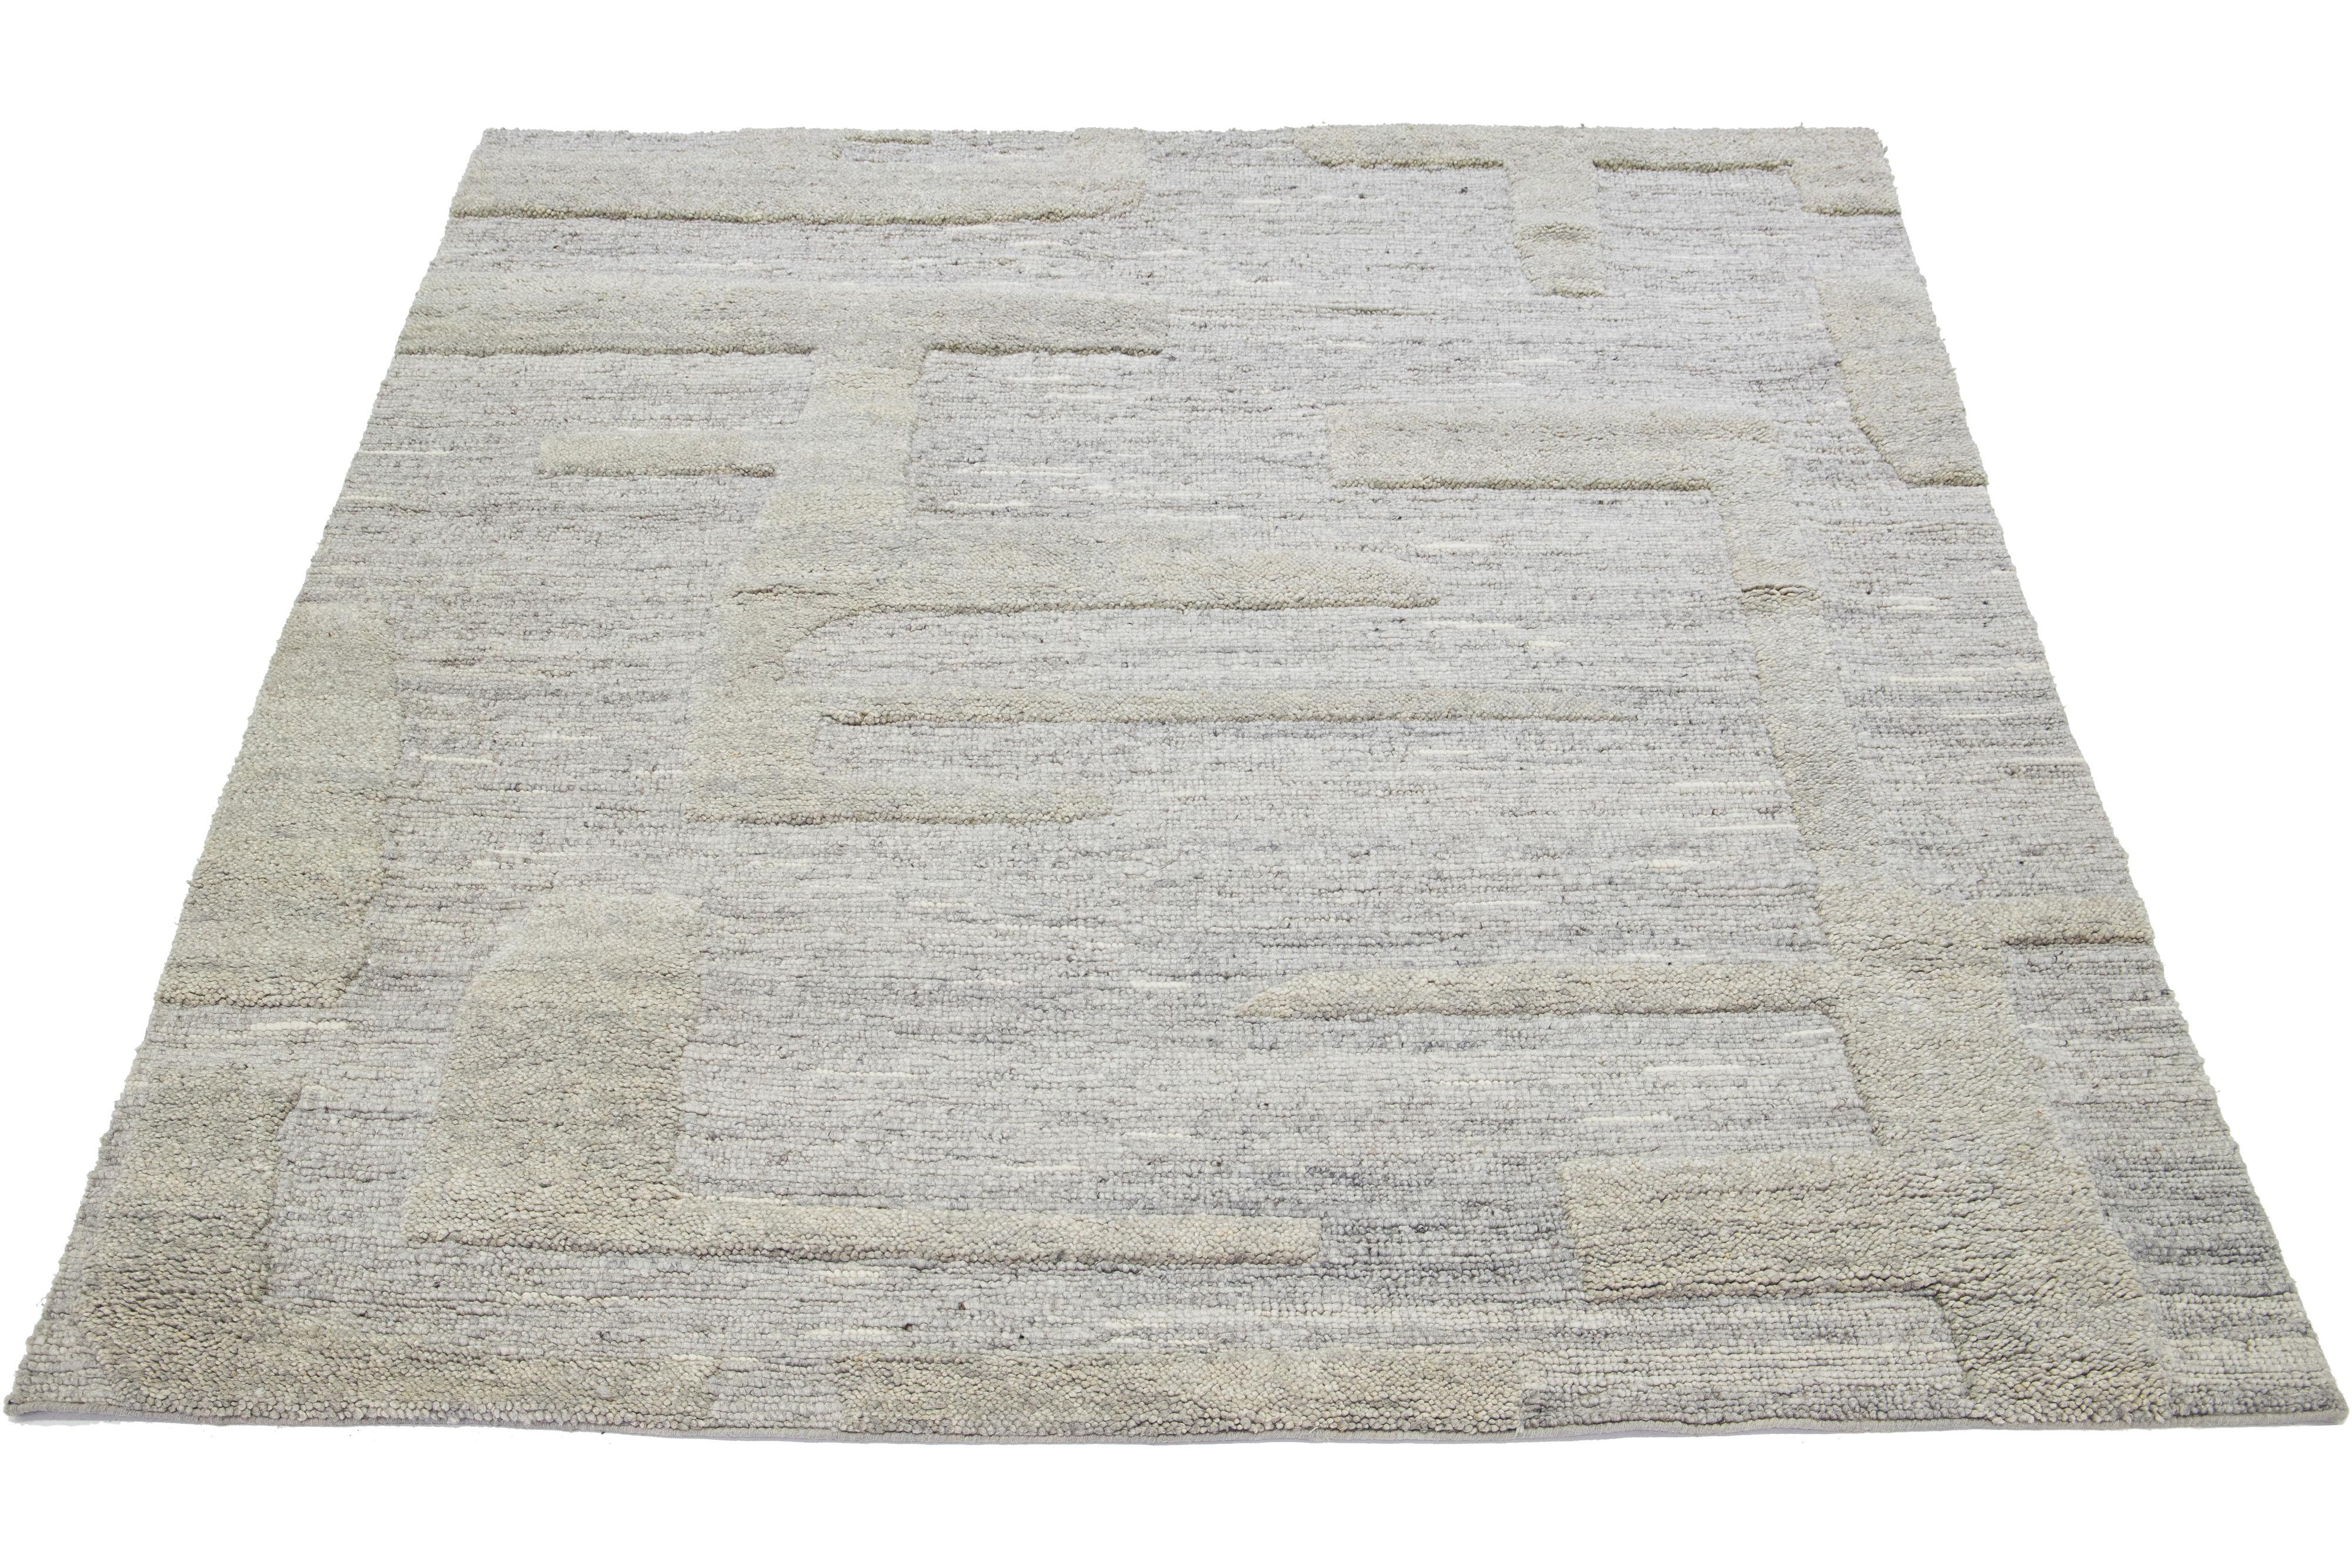 Ce tapis en laine de style marocain noué à la main présente un magnifique design moderne sur fond gris naturel. Il présente un superbe motif géométrique.

Ce tapis mesure 8' x 10'.